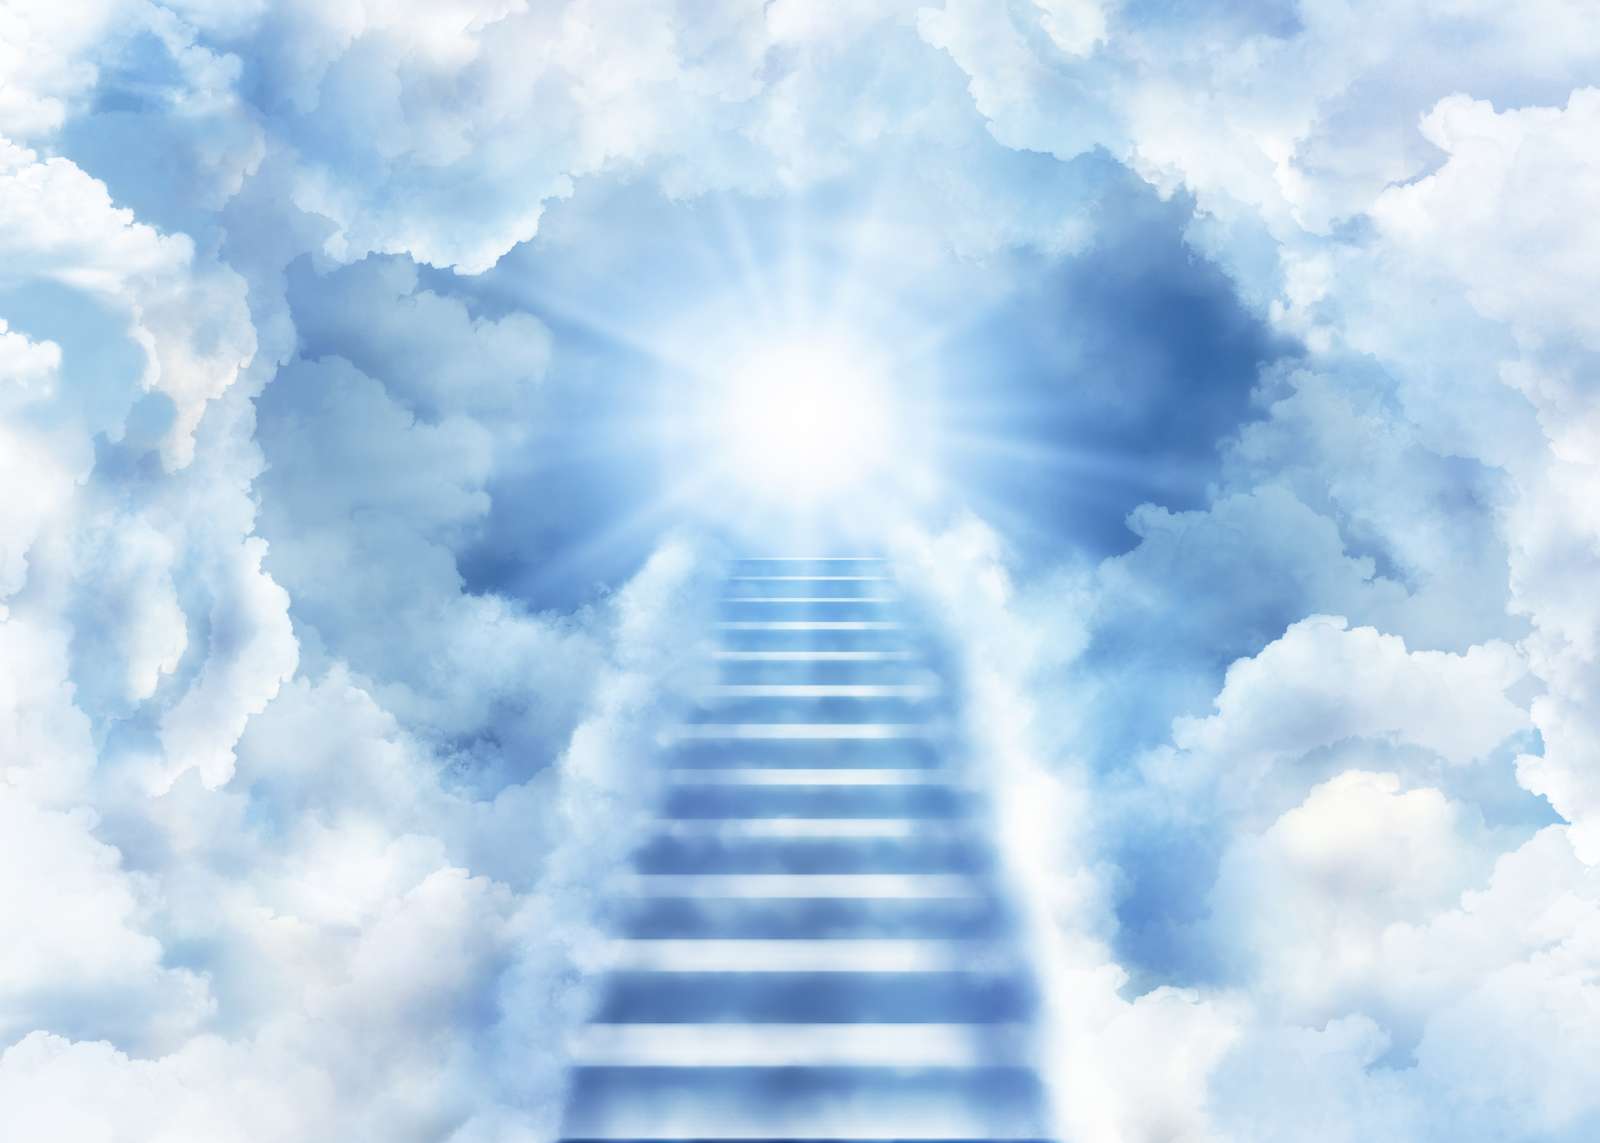 Stairway to heaven - Echelle dans les nuages online puzzle